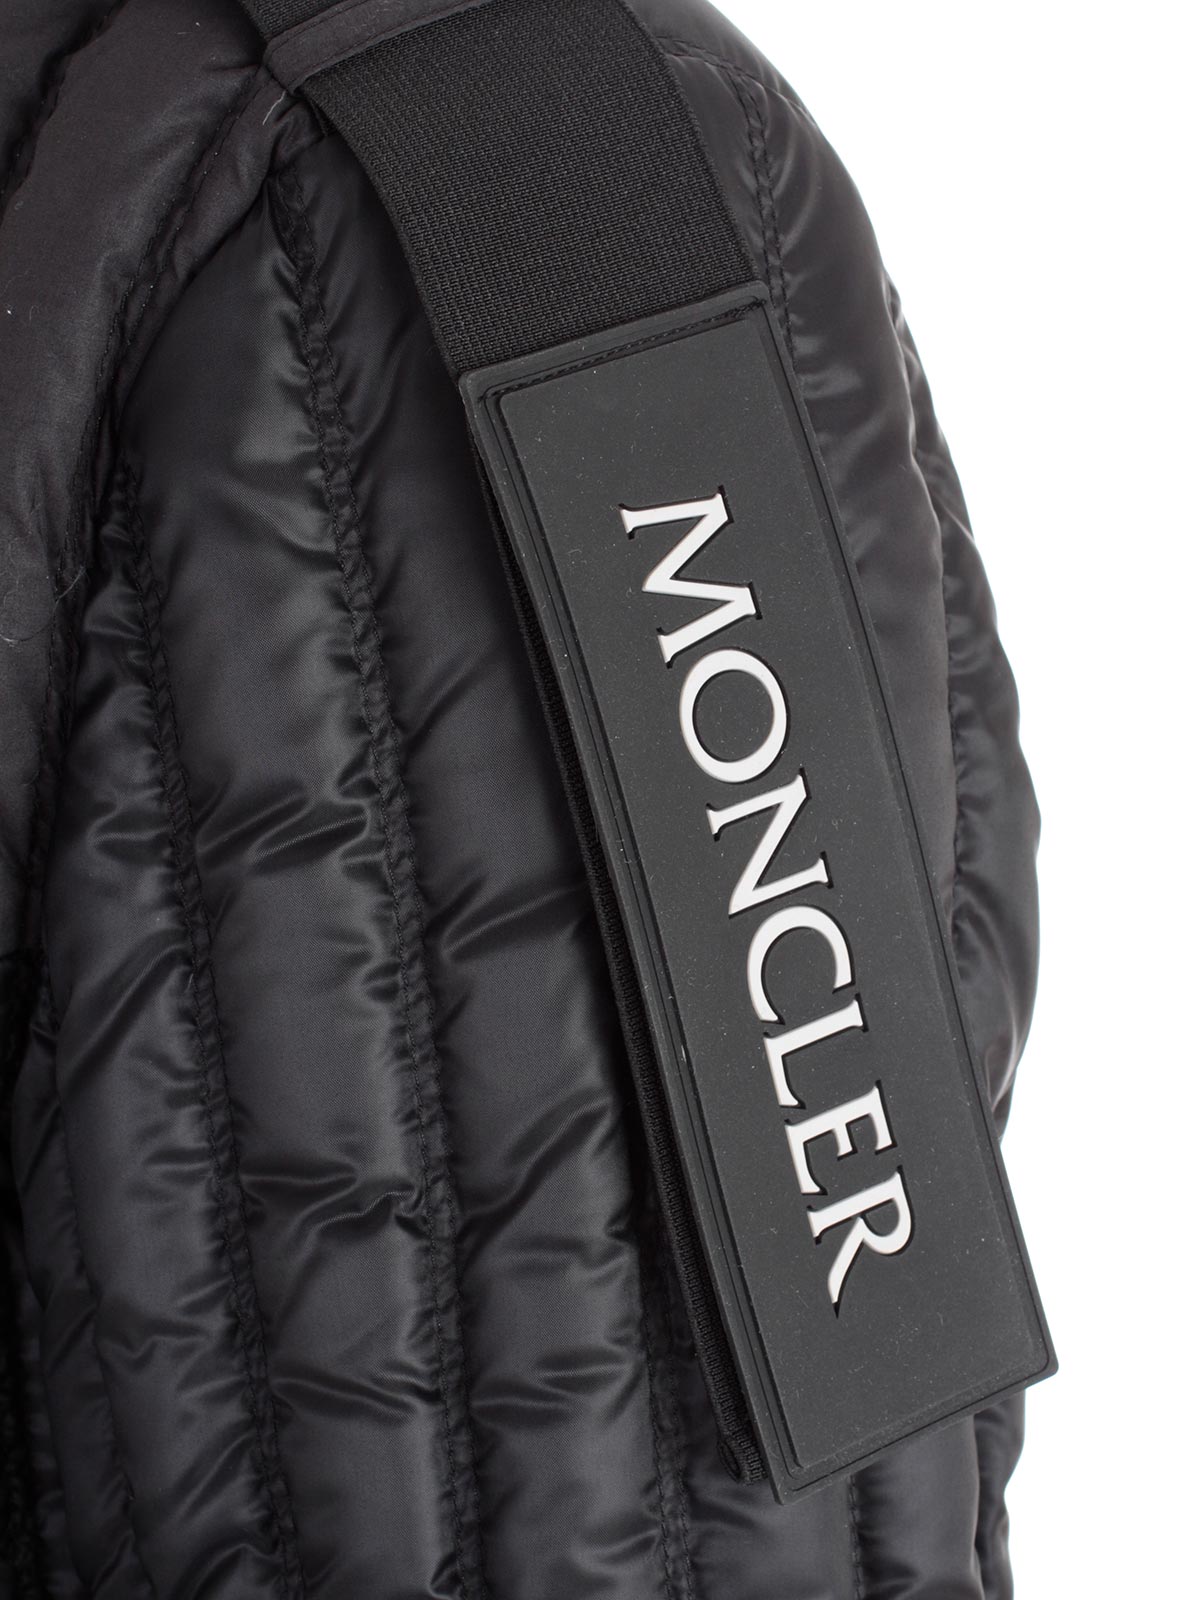 moncler genius jacket